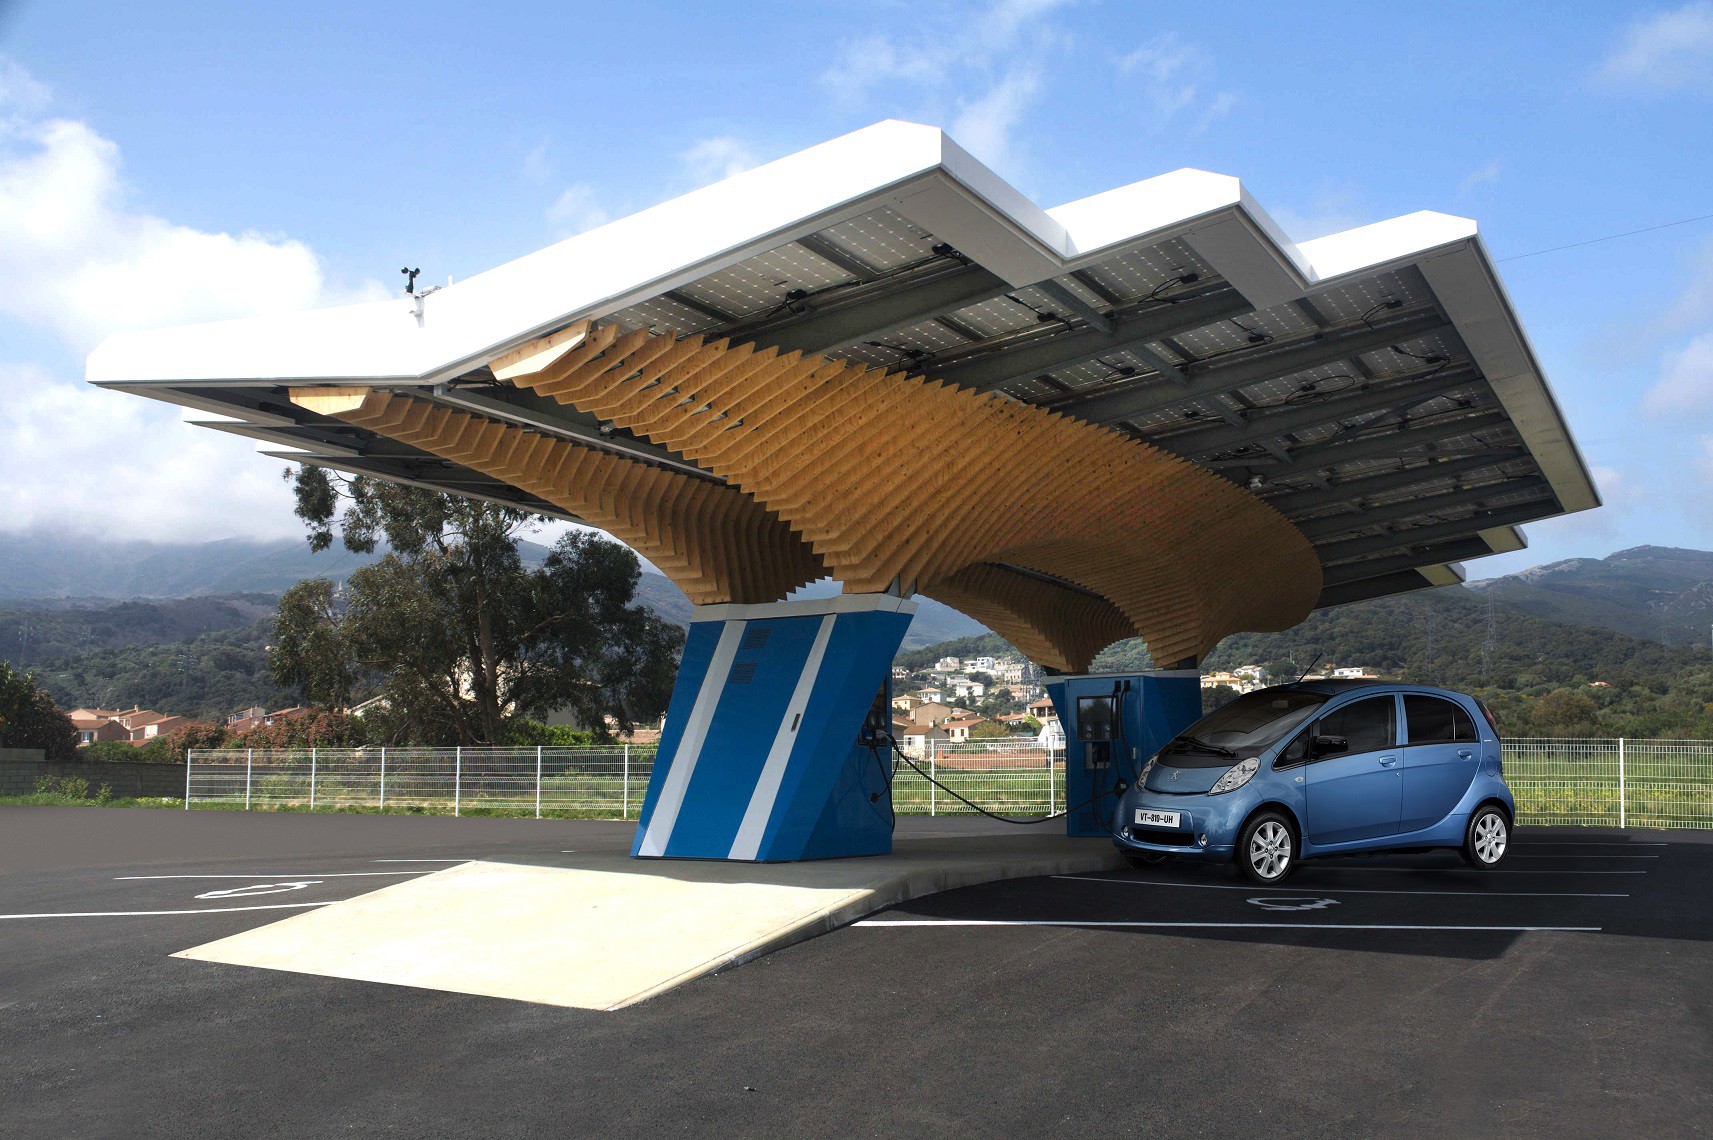 Descubre las futuras estaciones con energía solar que ha diseñado Peugeot